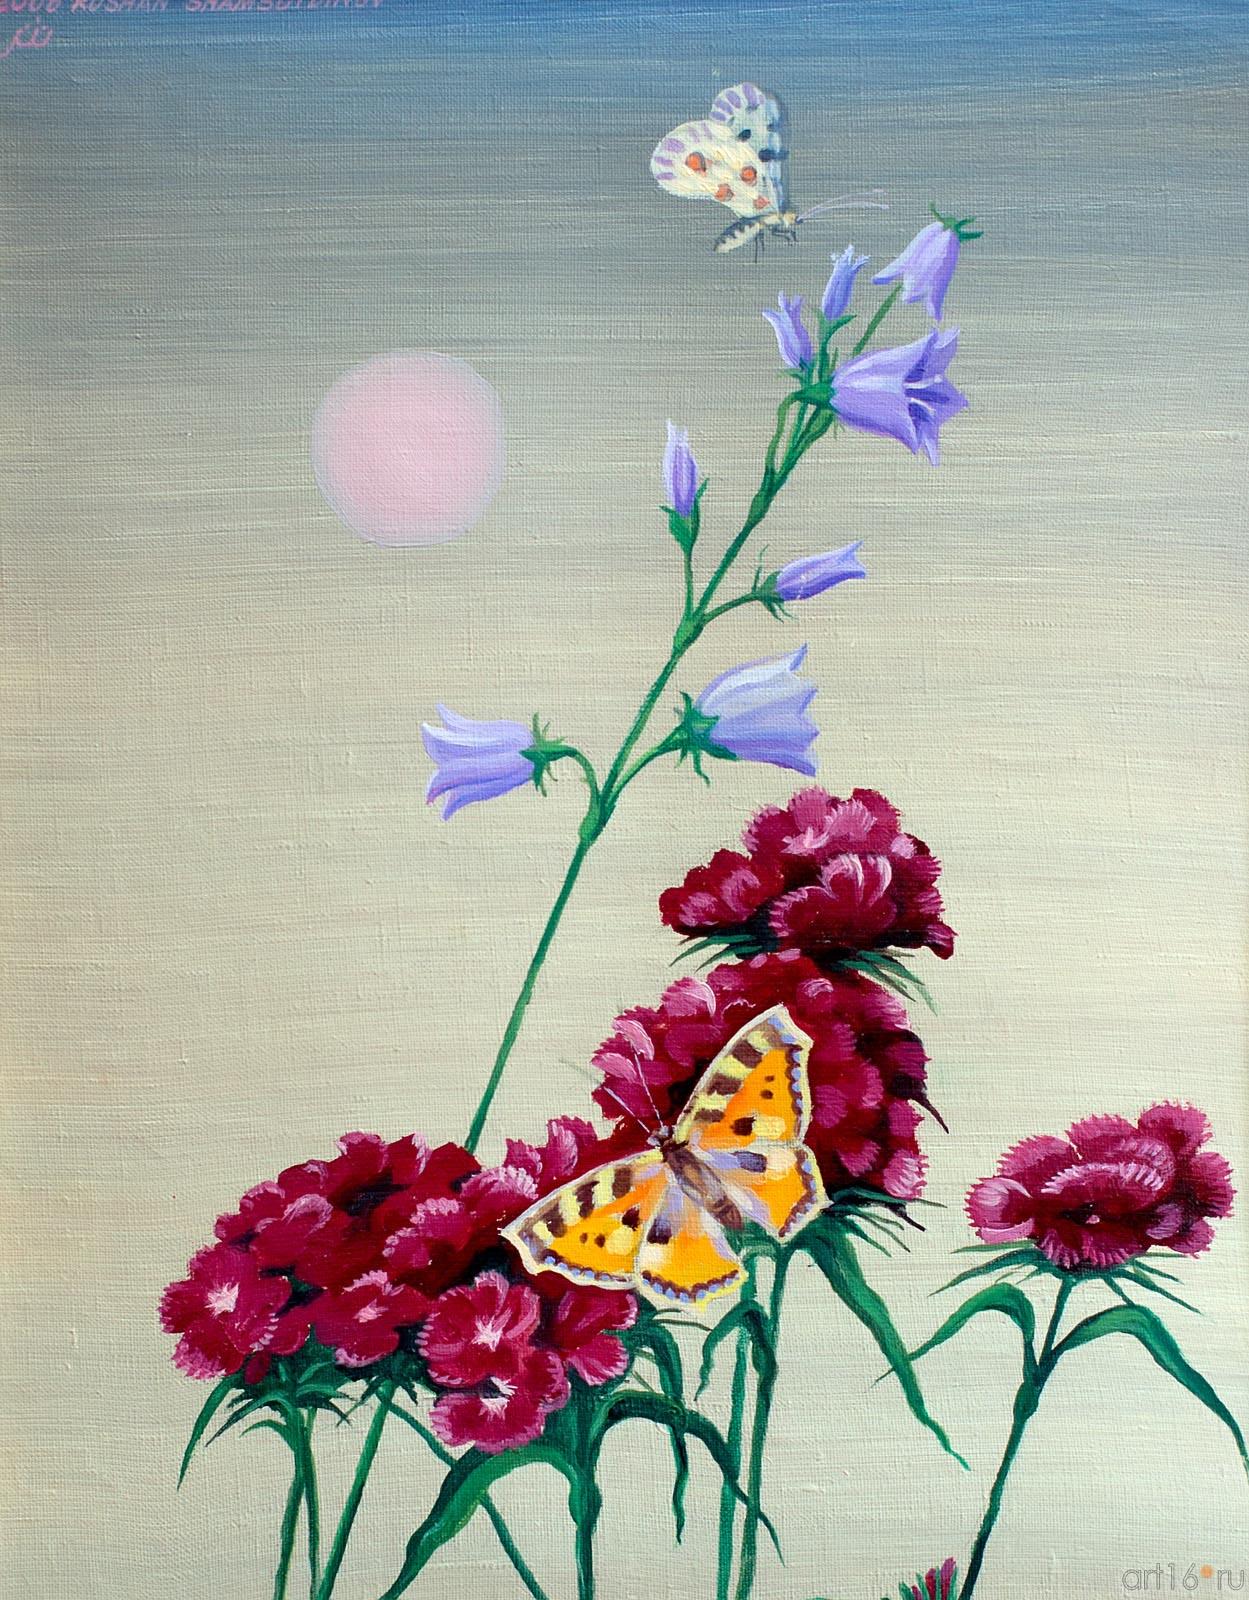 Гвоздики и бабочки. 2006. Рушан Шамсутдинов::Танец цветов. Выставка